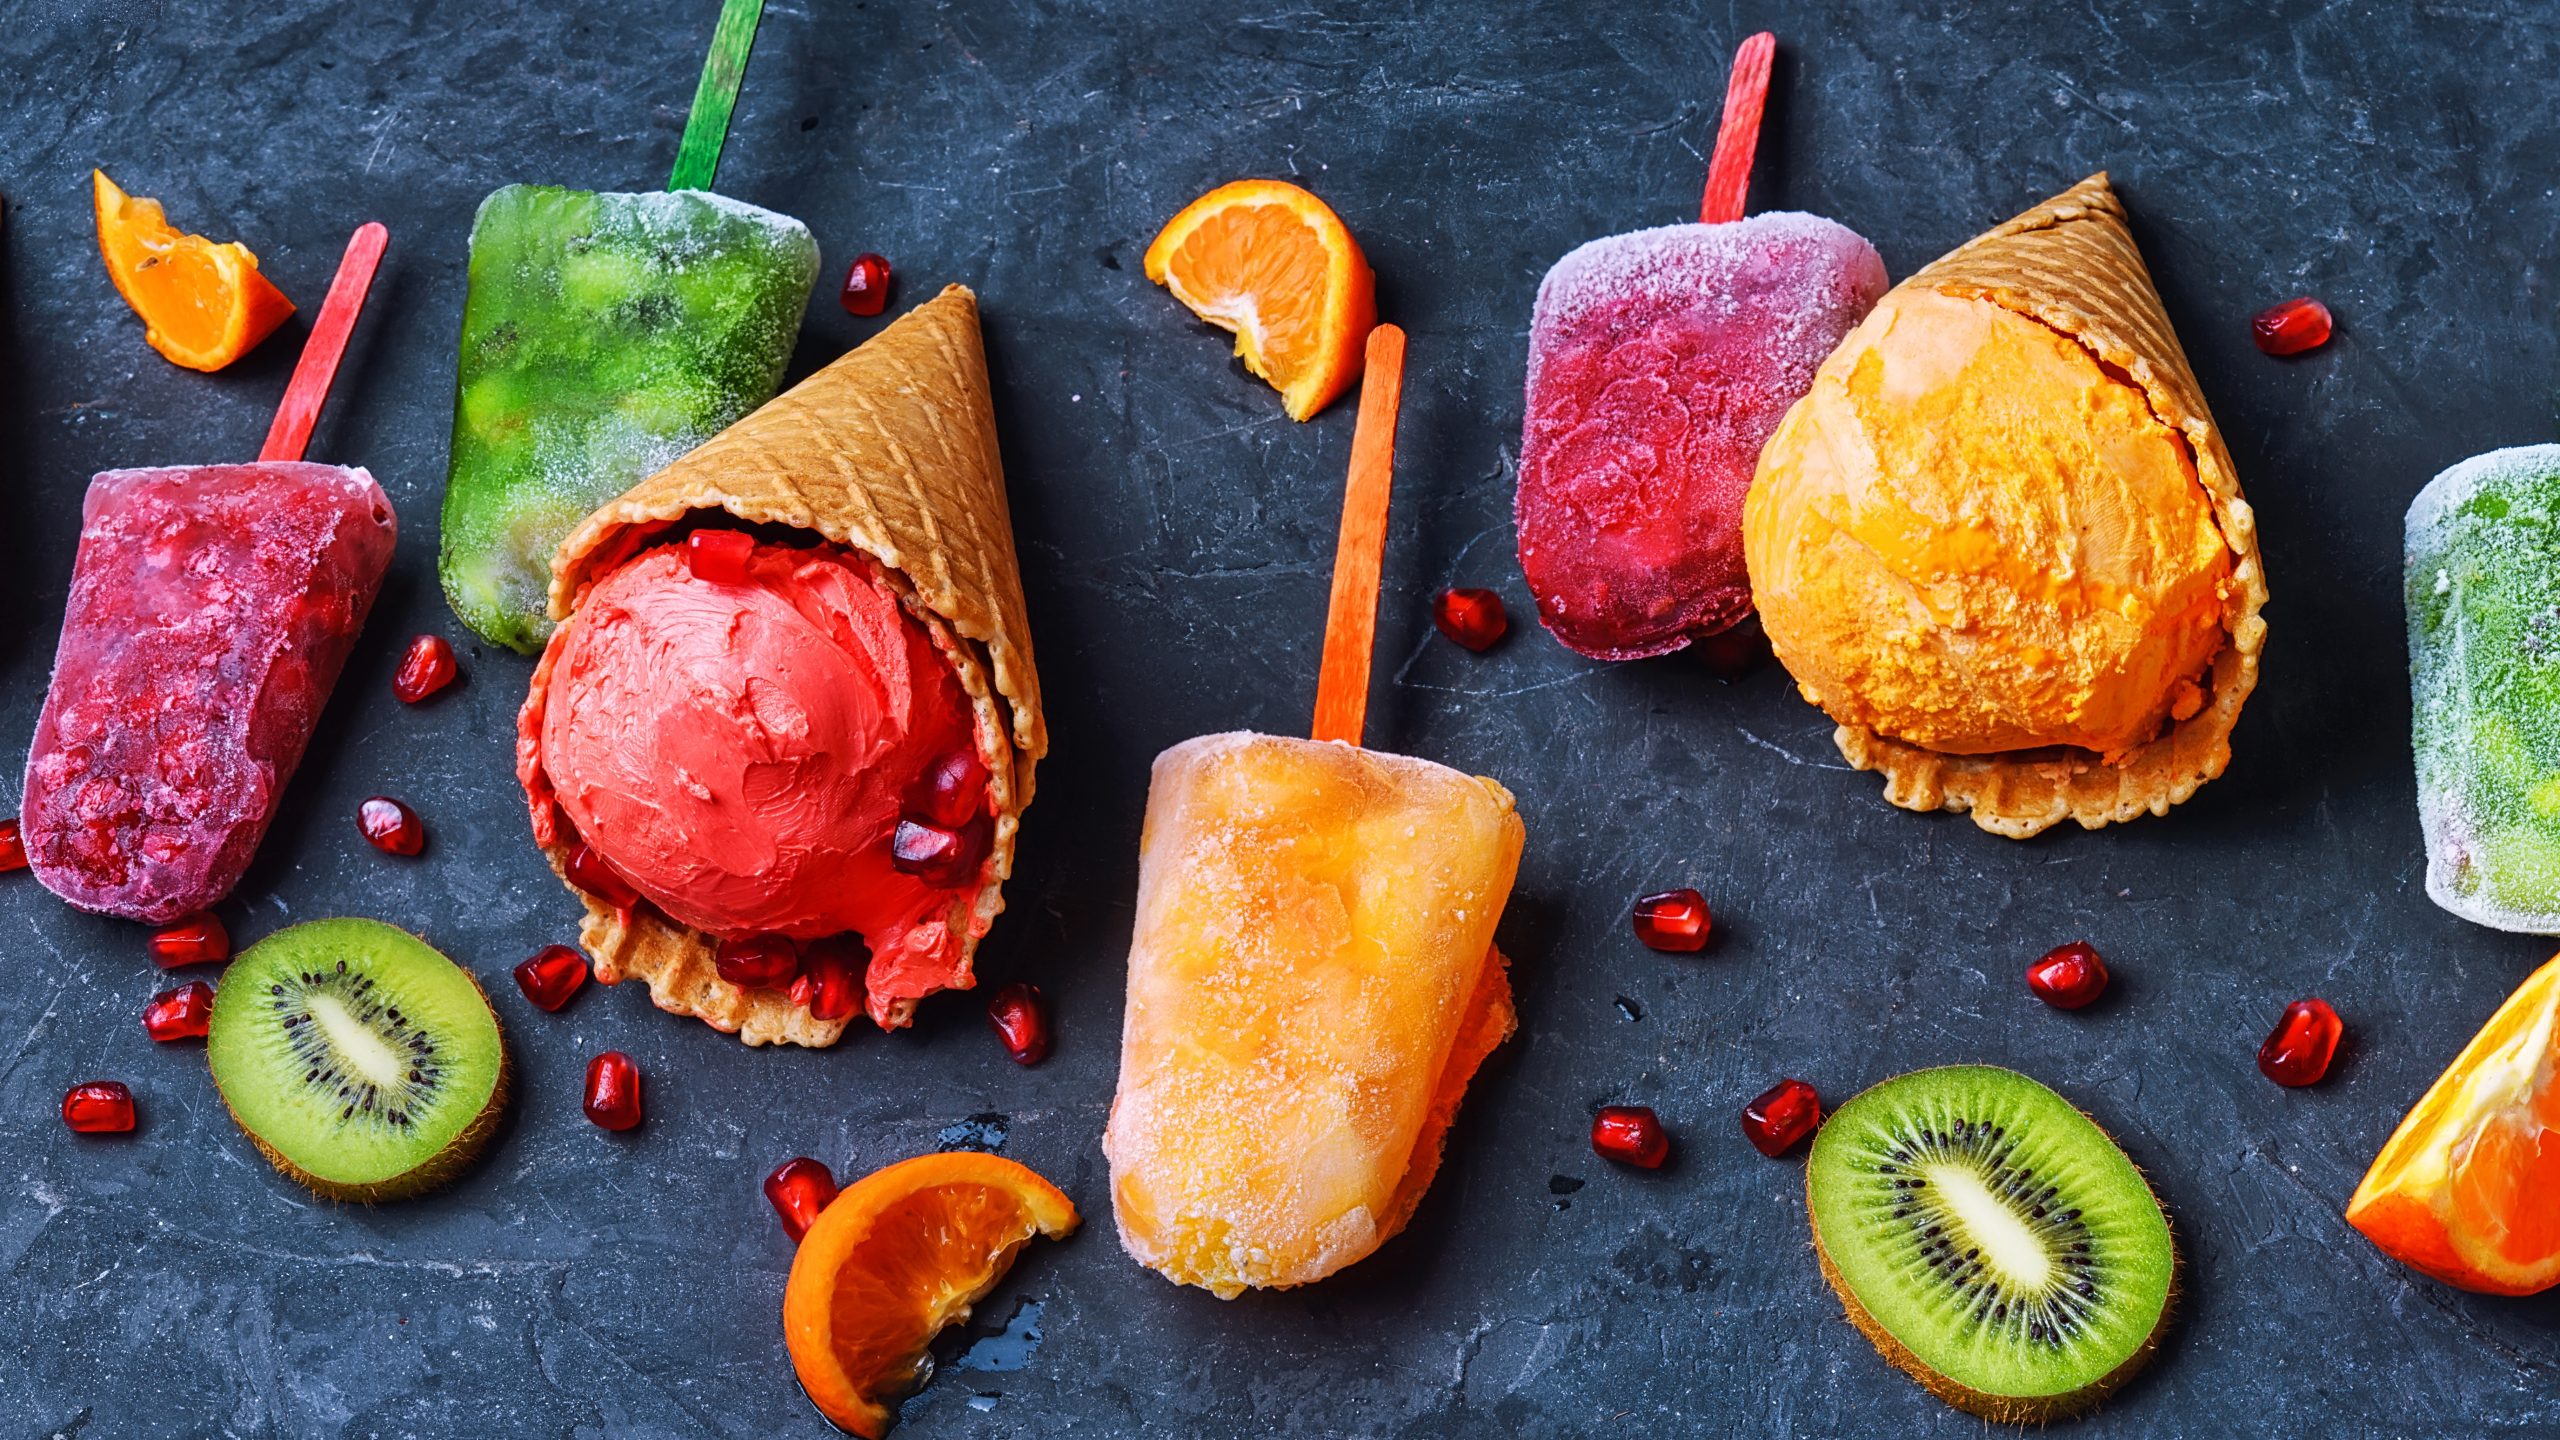 Eiskalte Früchte: gefrorene Desserts sind im Trend - Einzelhandelaktuell